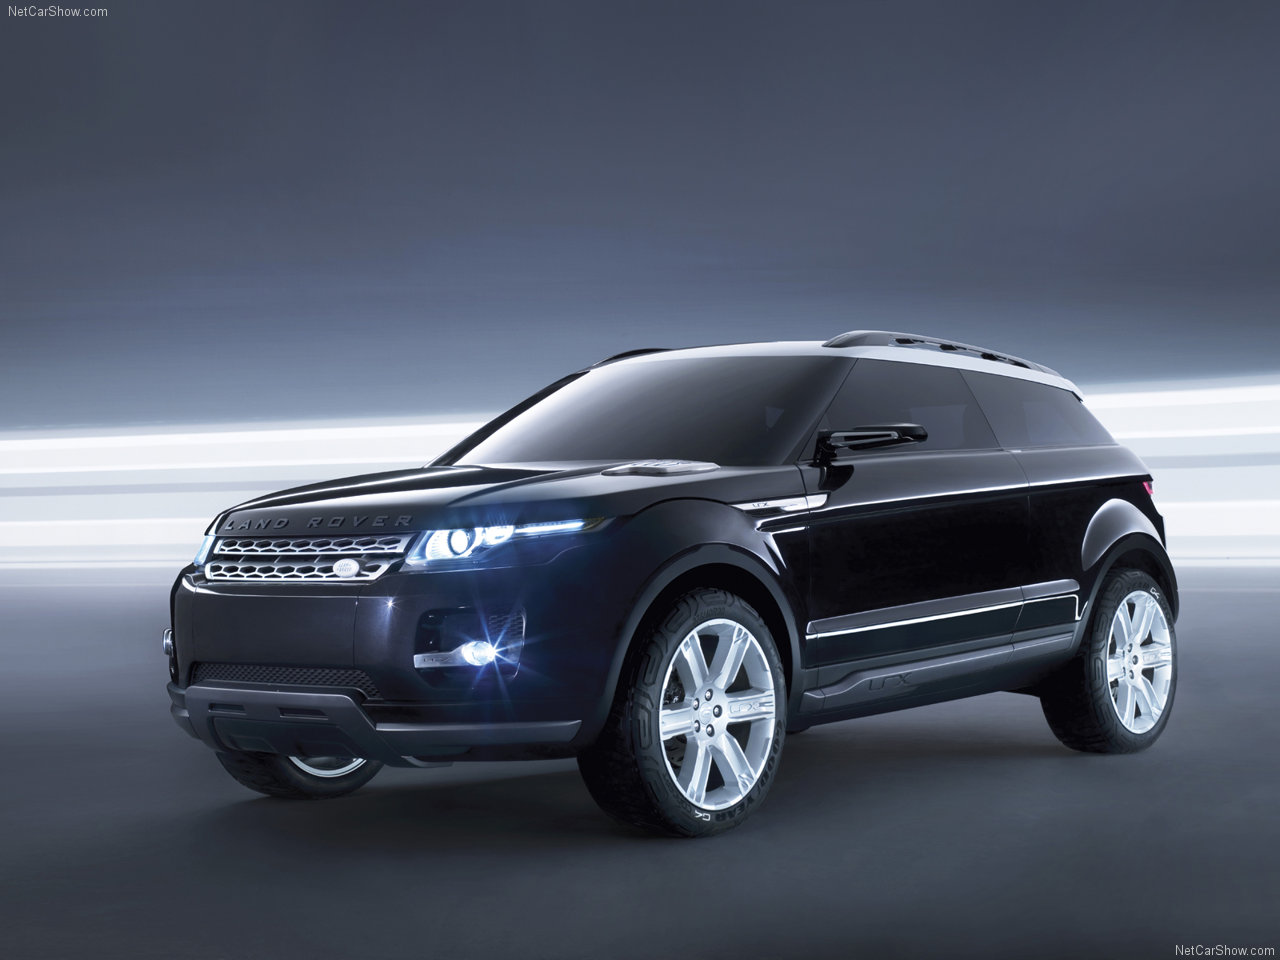 Land Rover - Populaire francais d'automobiles: 2008 Land Rover LRX ...